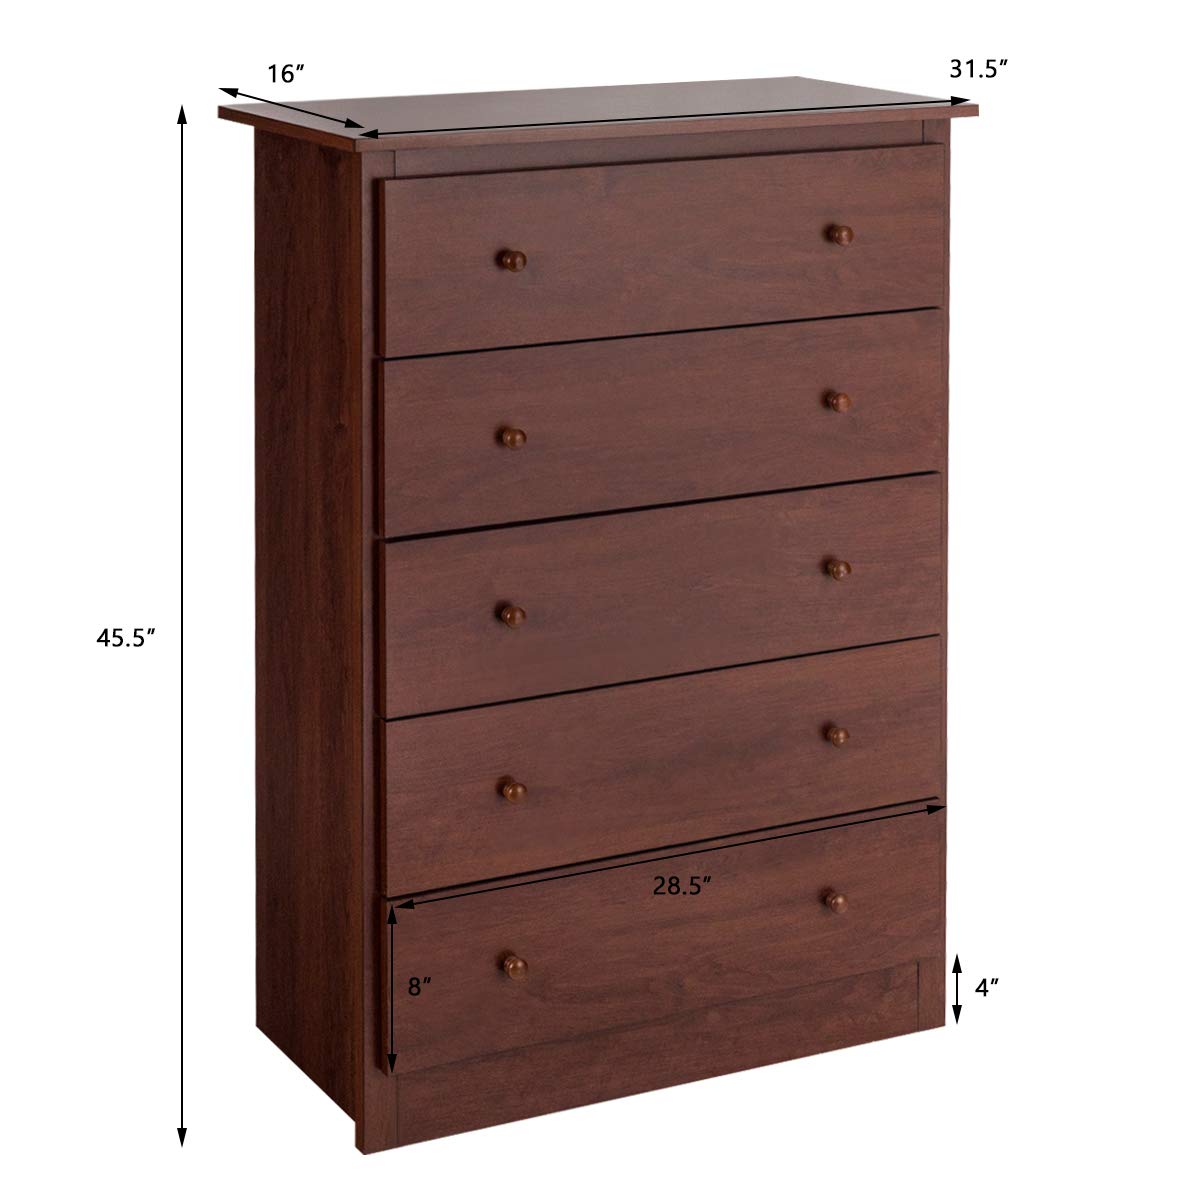 Giantex 5 Drawer Chest, Storage Dresser, Wooden Clothes Organizer